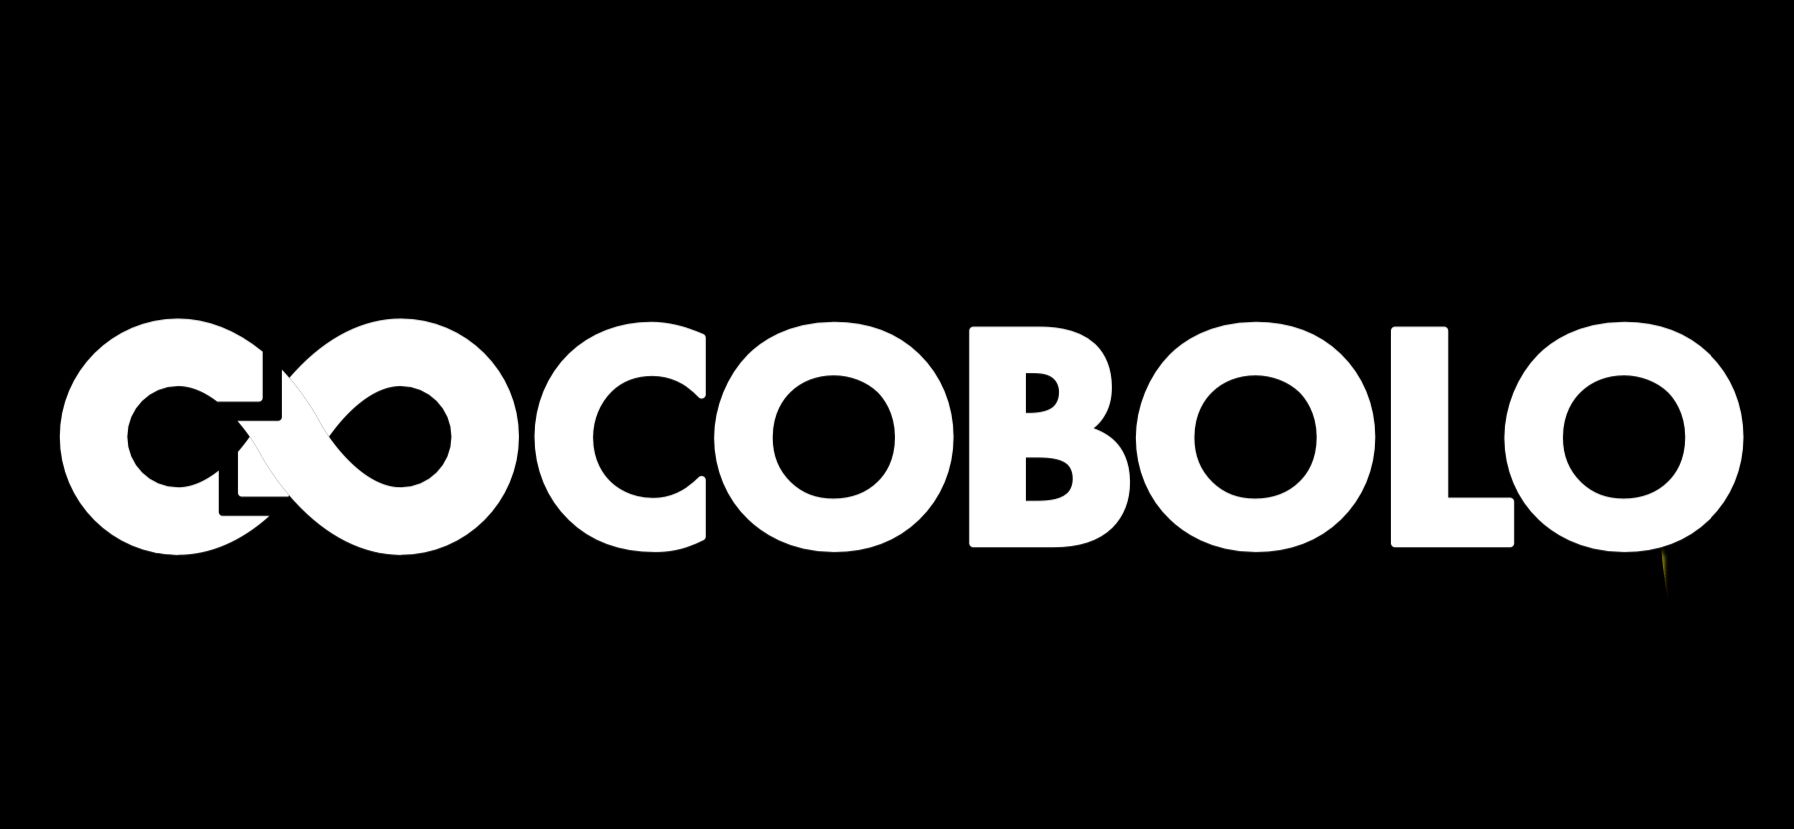 Cocobolo World Ltd